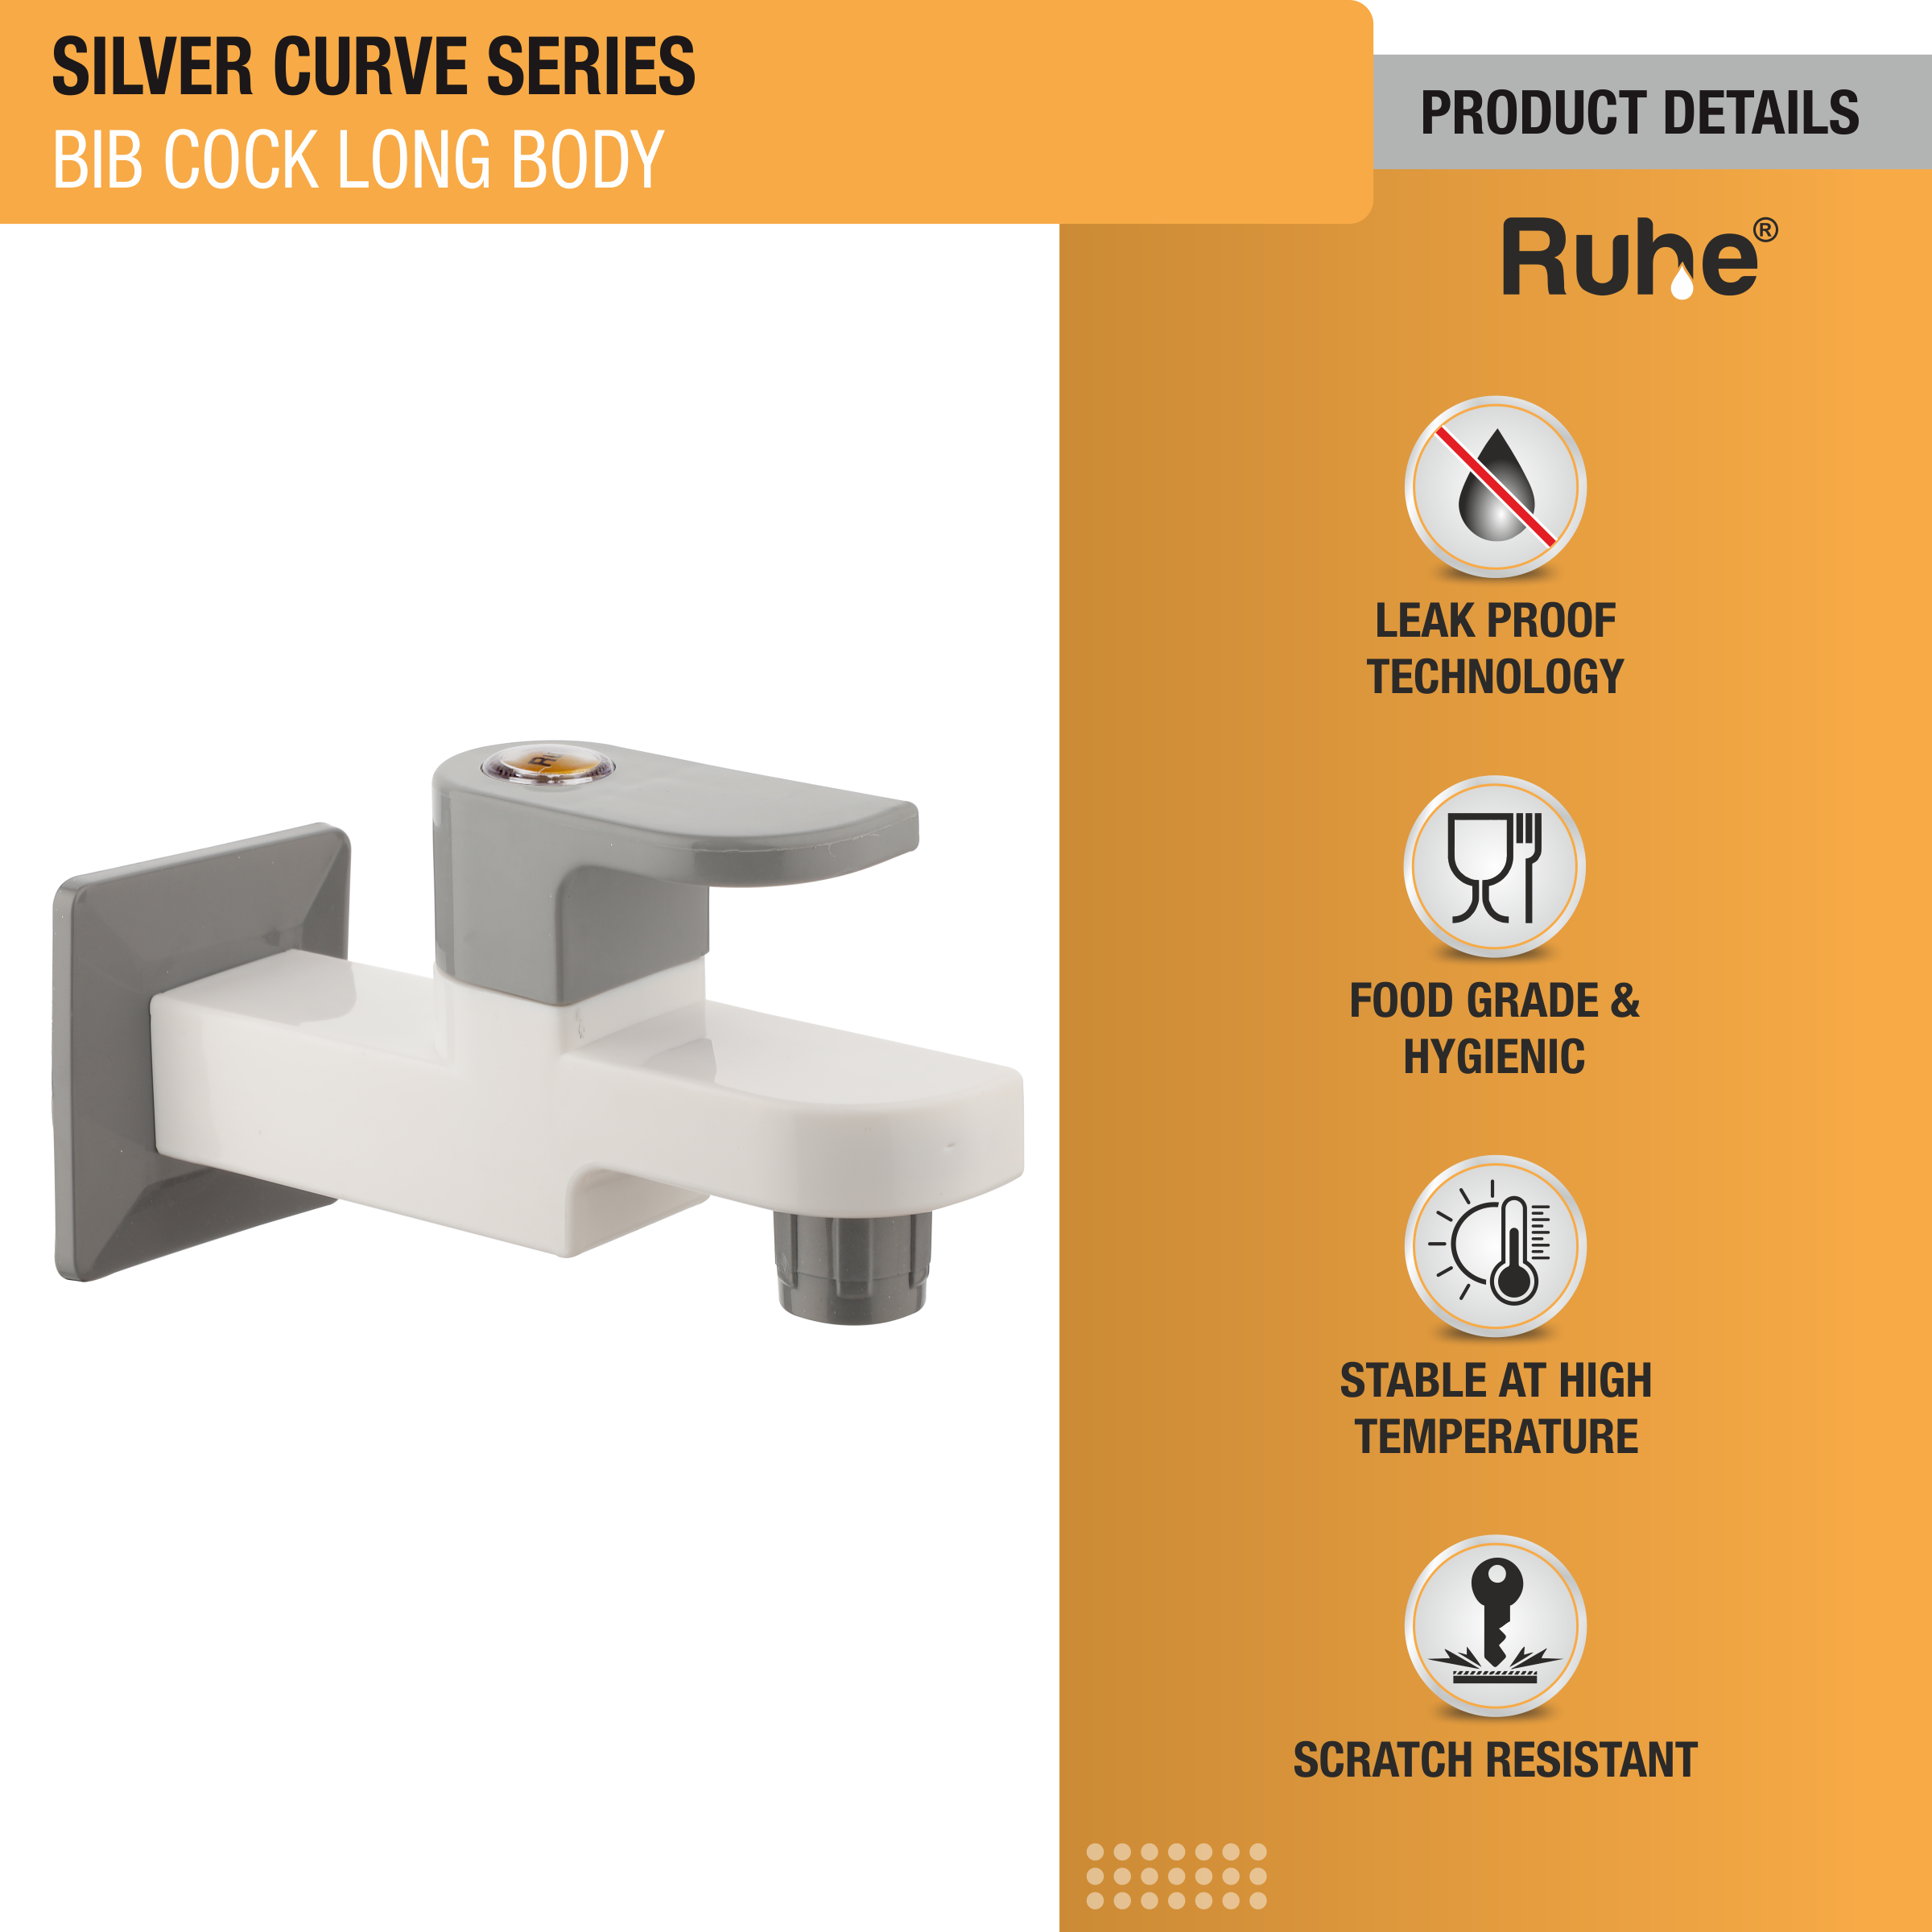 Silver Curve PTMT Bib Cock Long Body Faucet product details